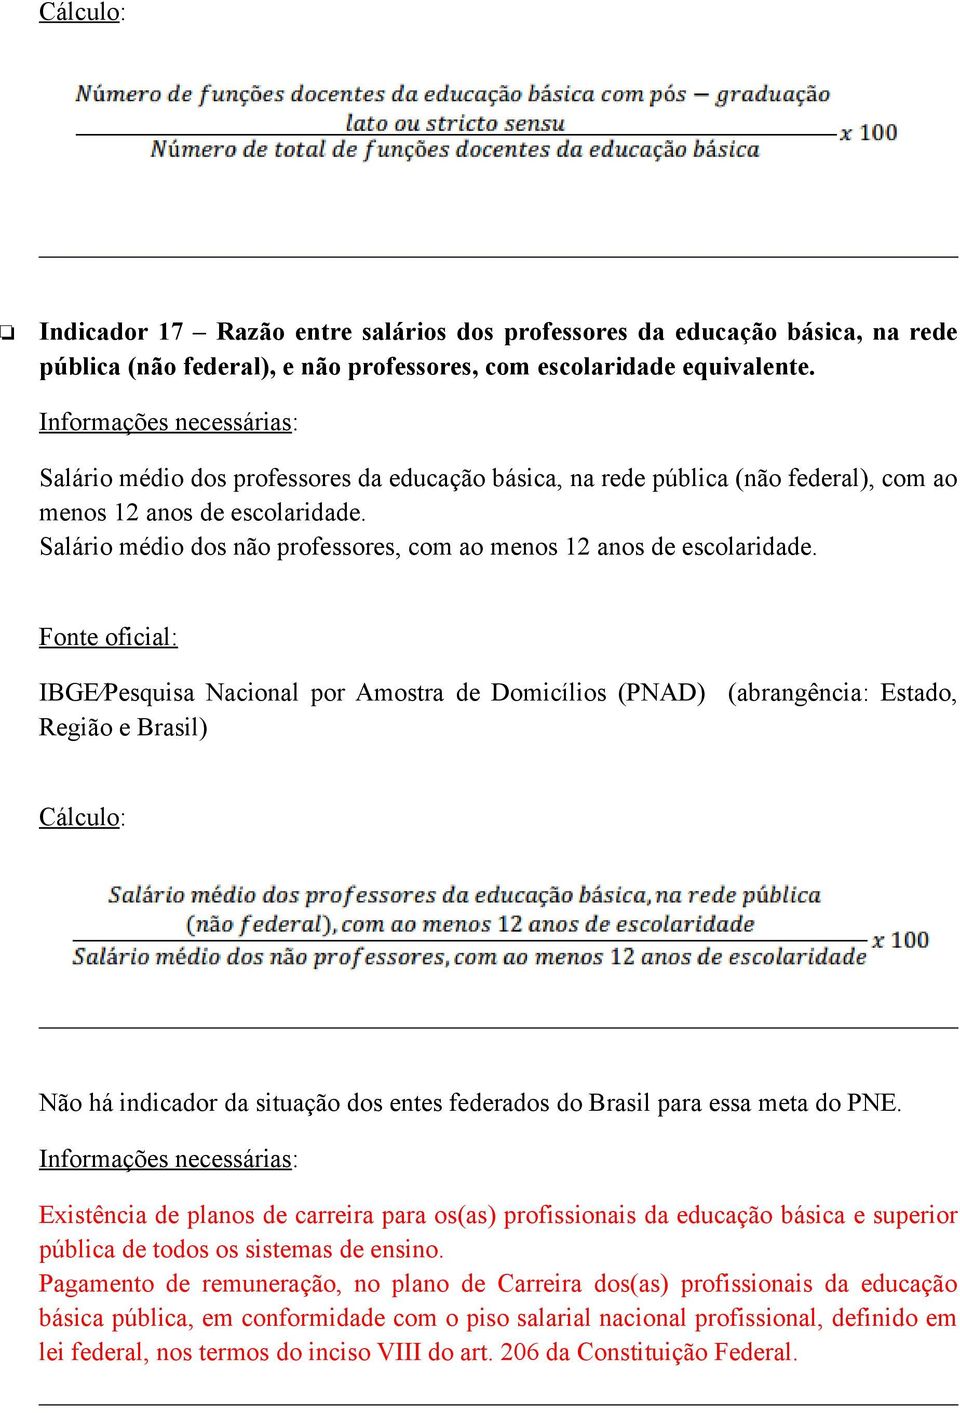 IBGE Pesquisa Nacional por Amostra de Domicílios (PNAD) (abrangência: Estado, Região e Brasil) Não há indicador da situação dos entes federados do Brasil para essa meta do PNE.